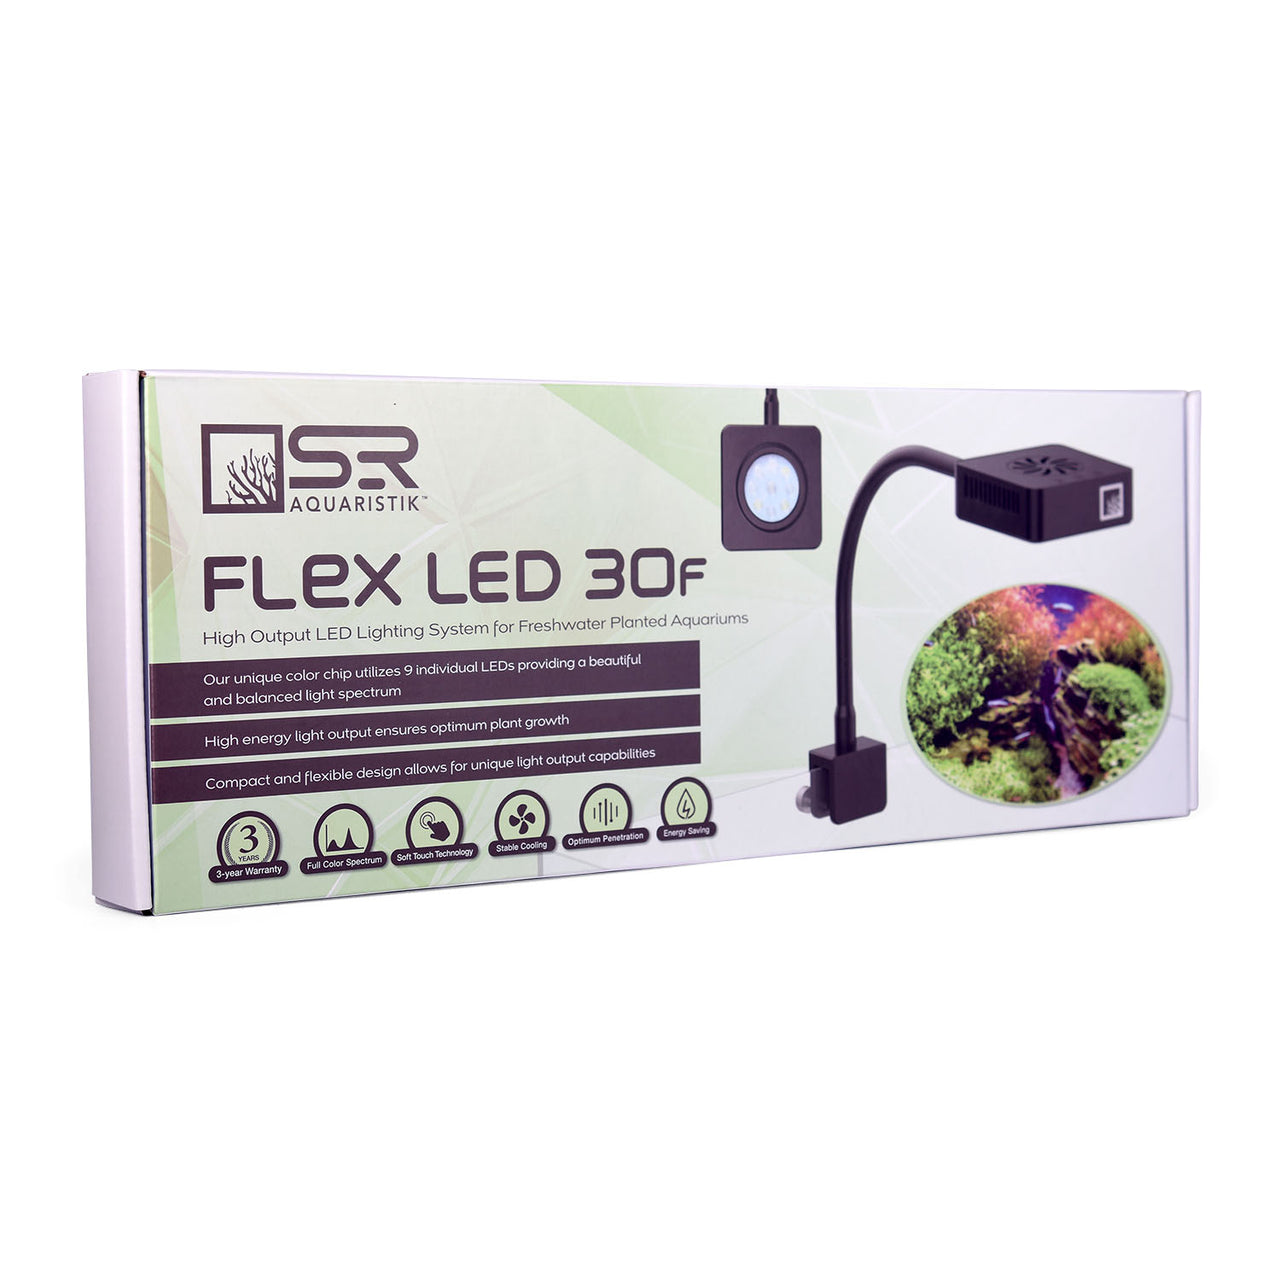 Flex LED 30F